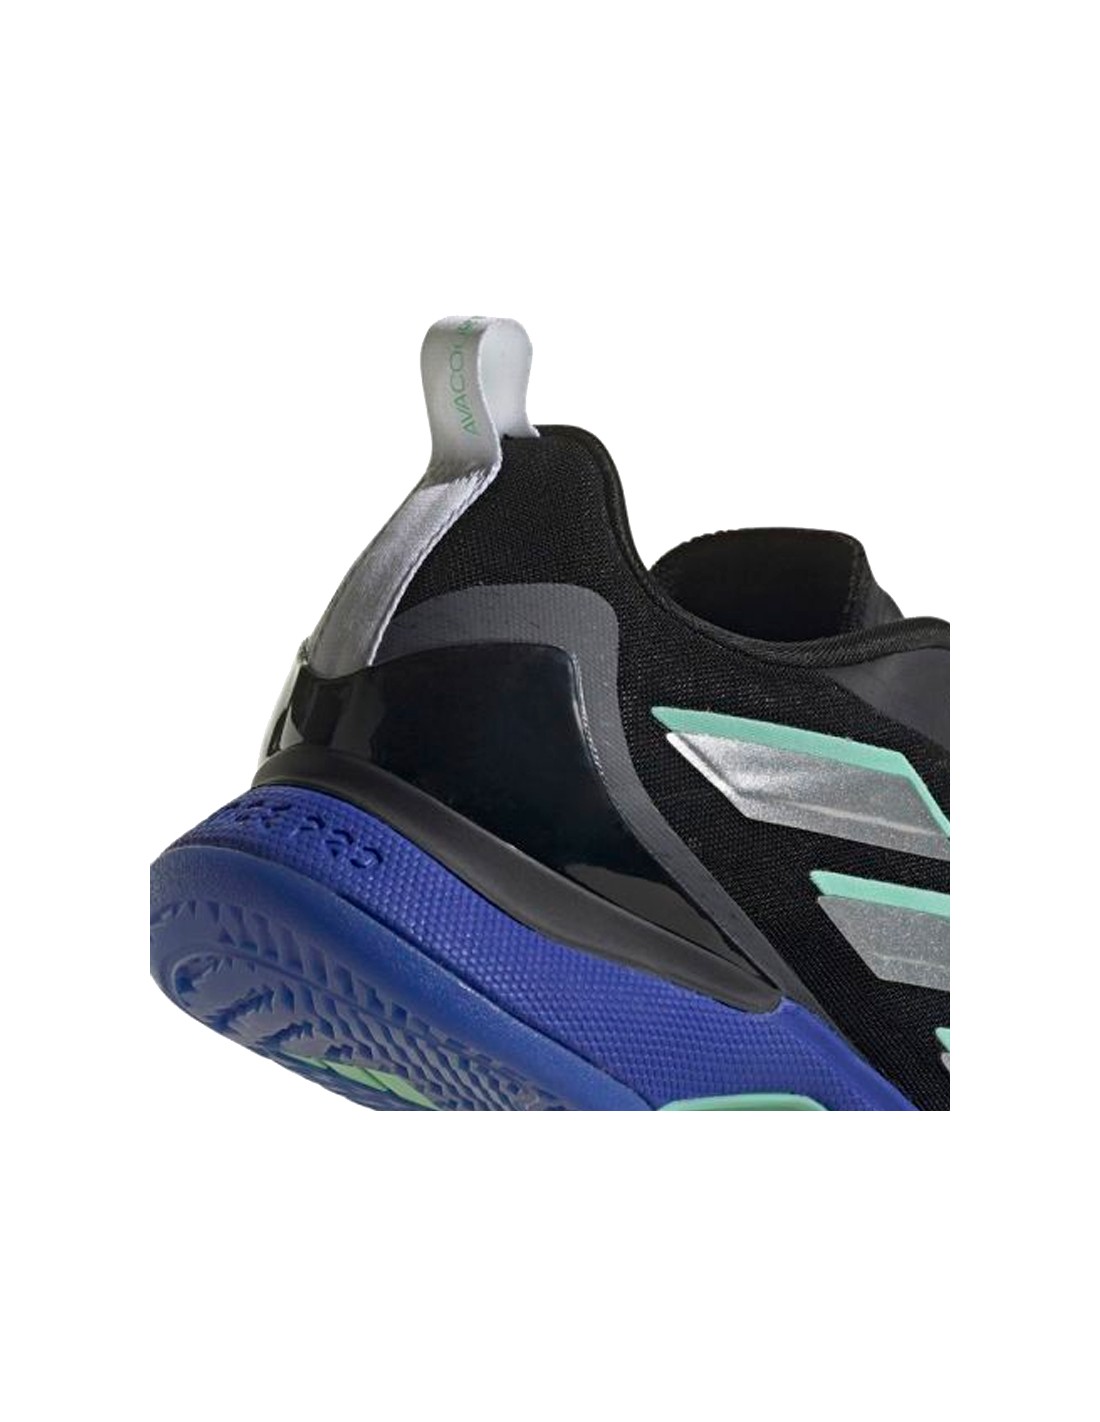 Adidas Avacourt Shoes - Women's - Core Black / Lucid Blue - 8.5